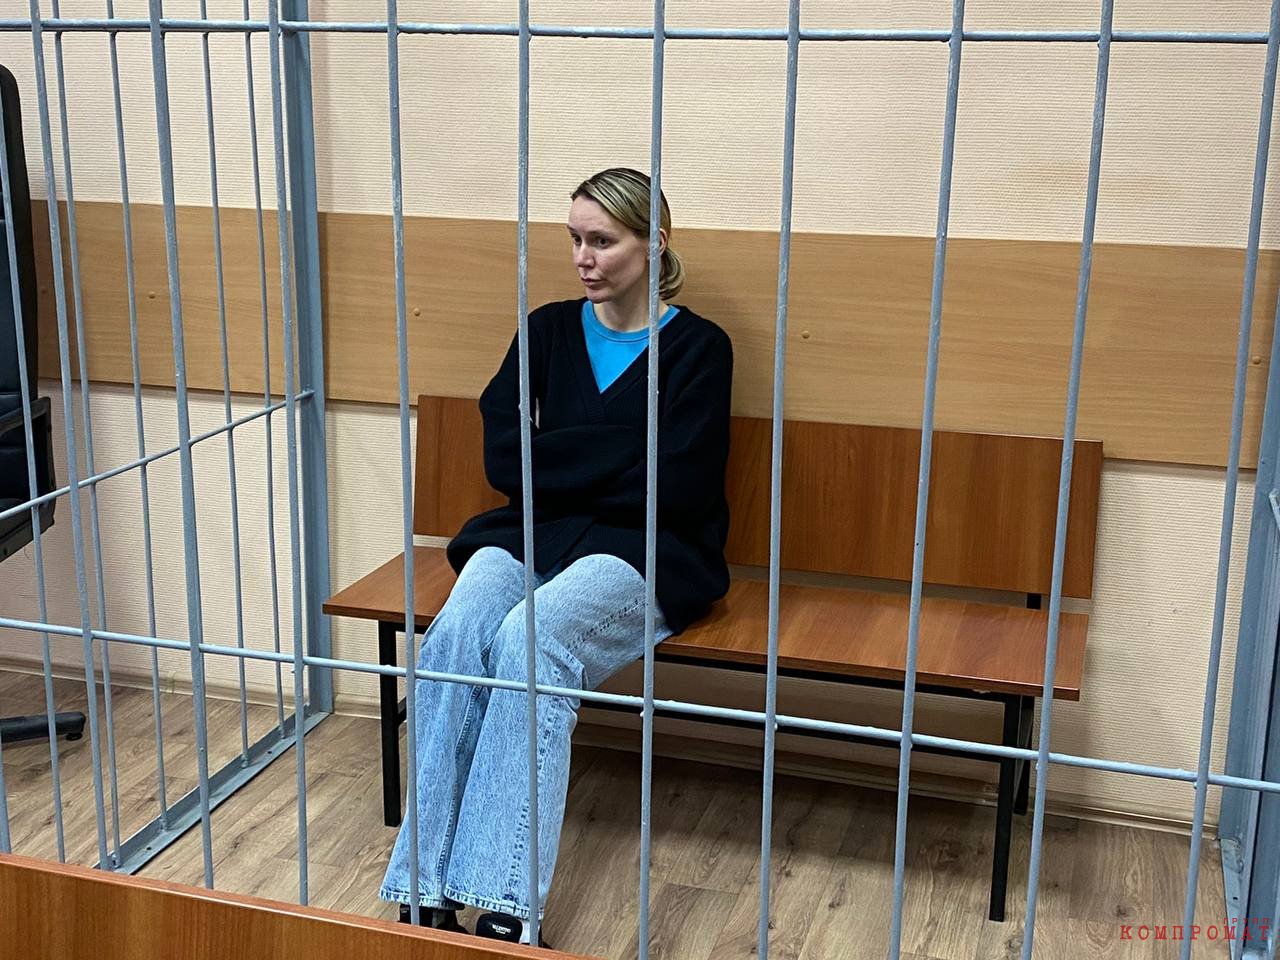 Daria Spiridonova was placed under house arrest